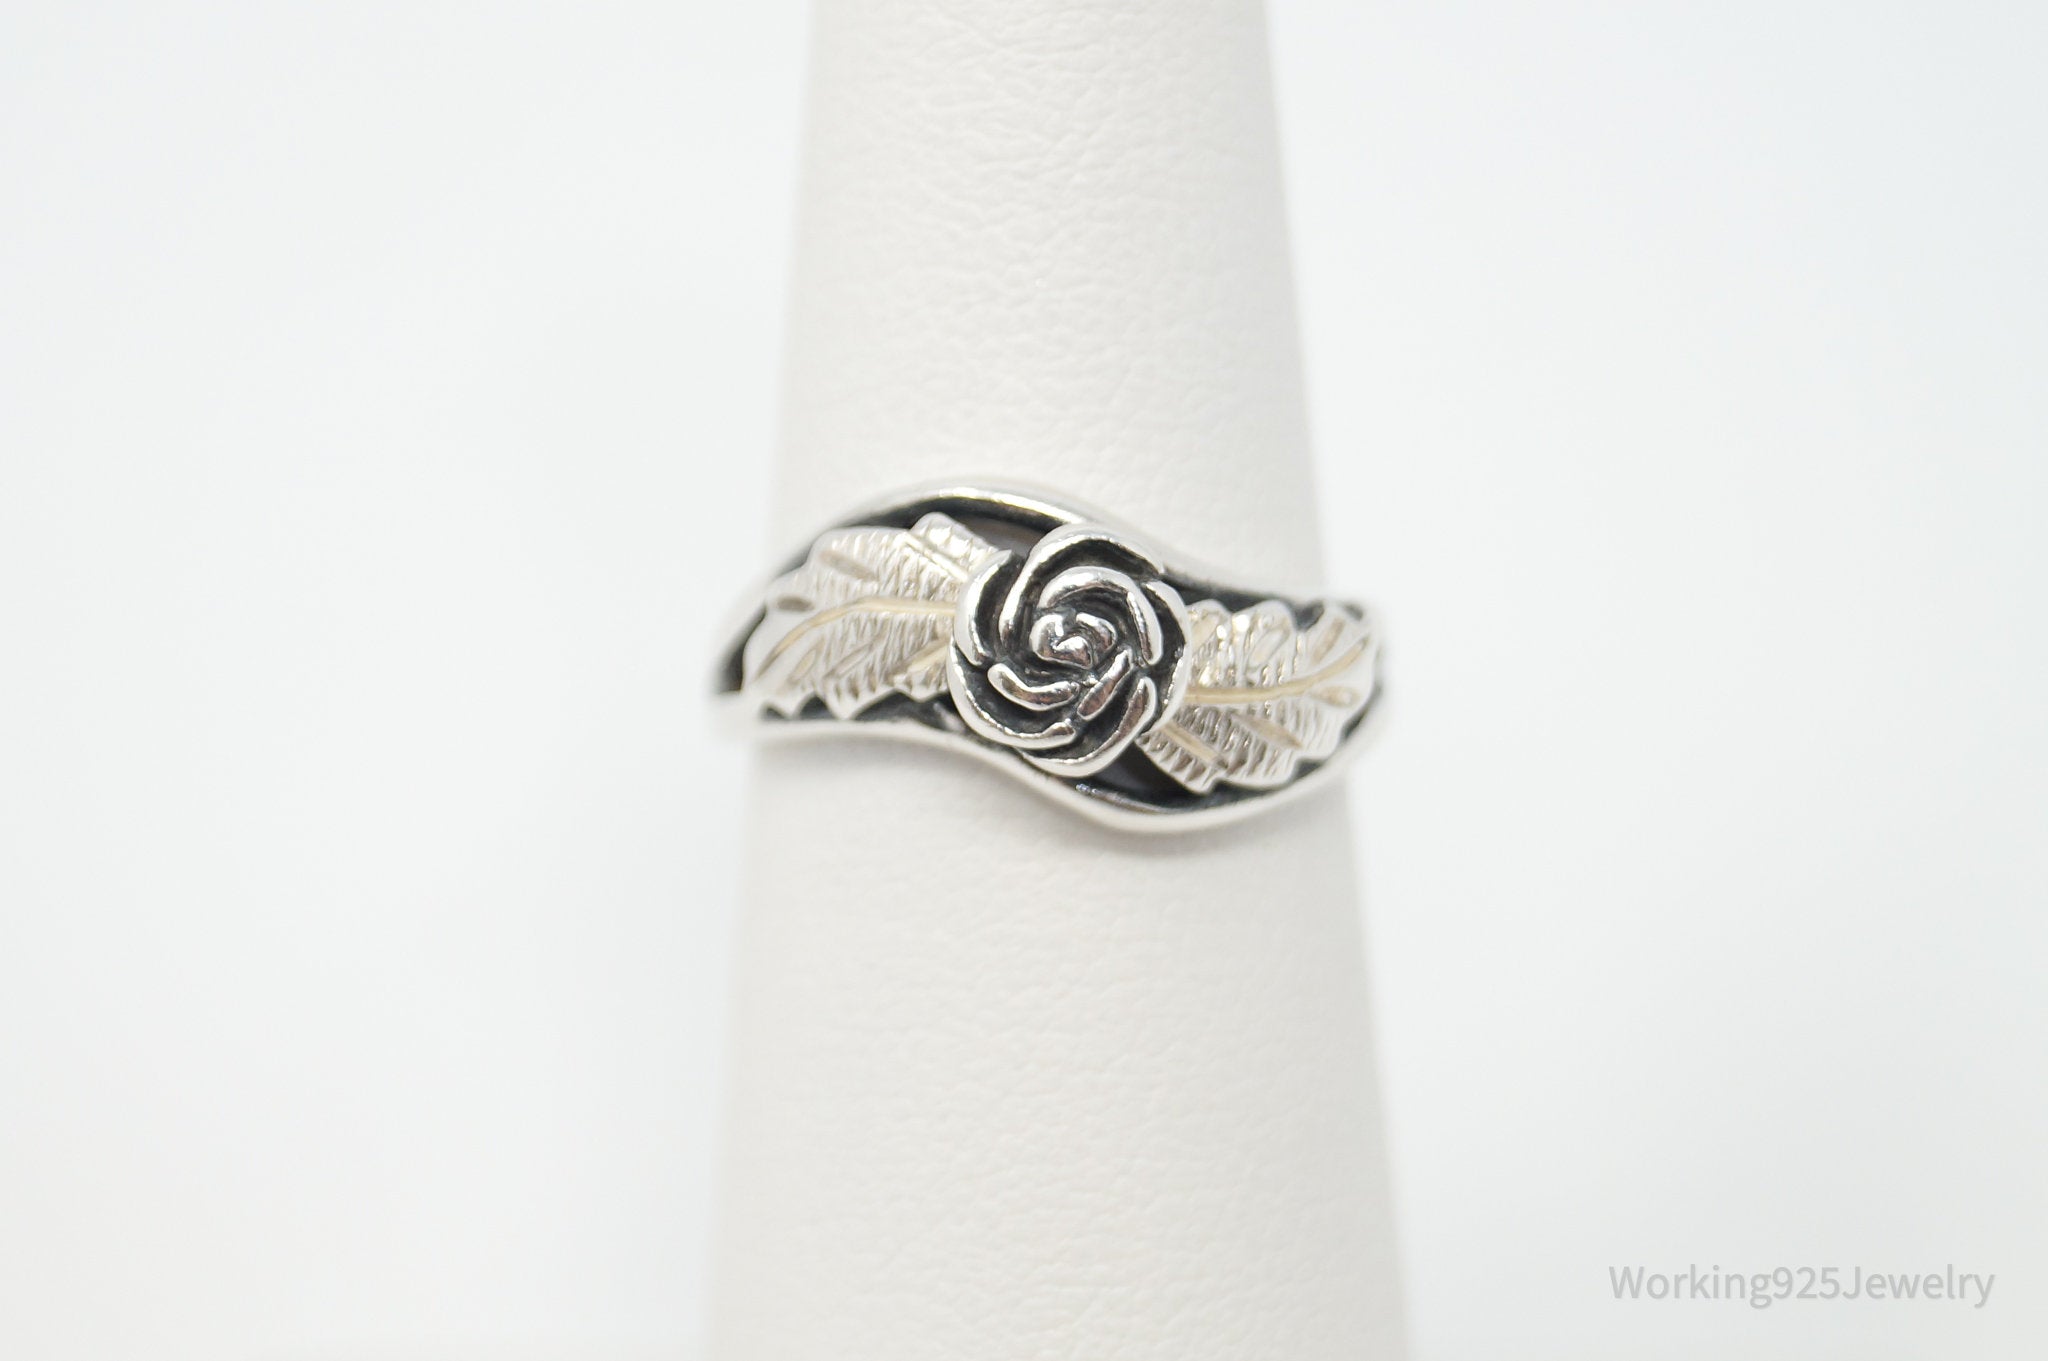 Vtg Wheeler Manufacturing Co 10K Gold Rose Sterling Silver Ring - Size 5